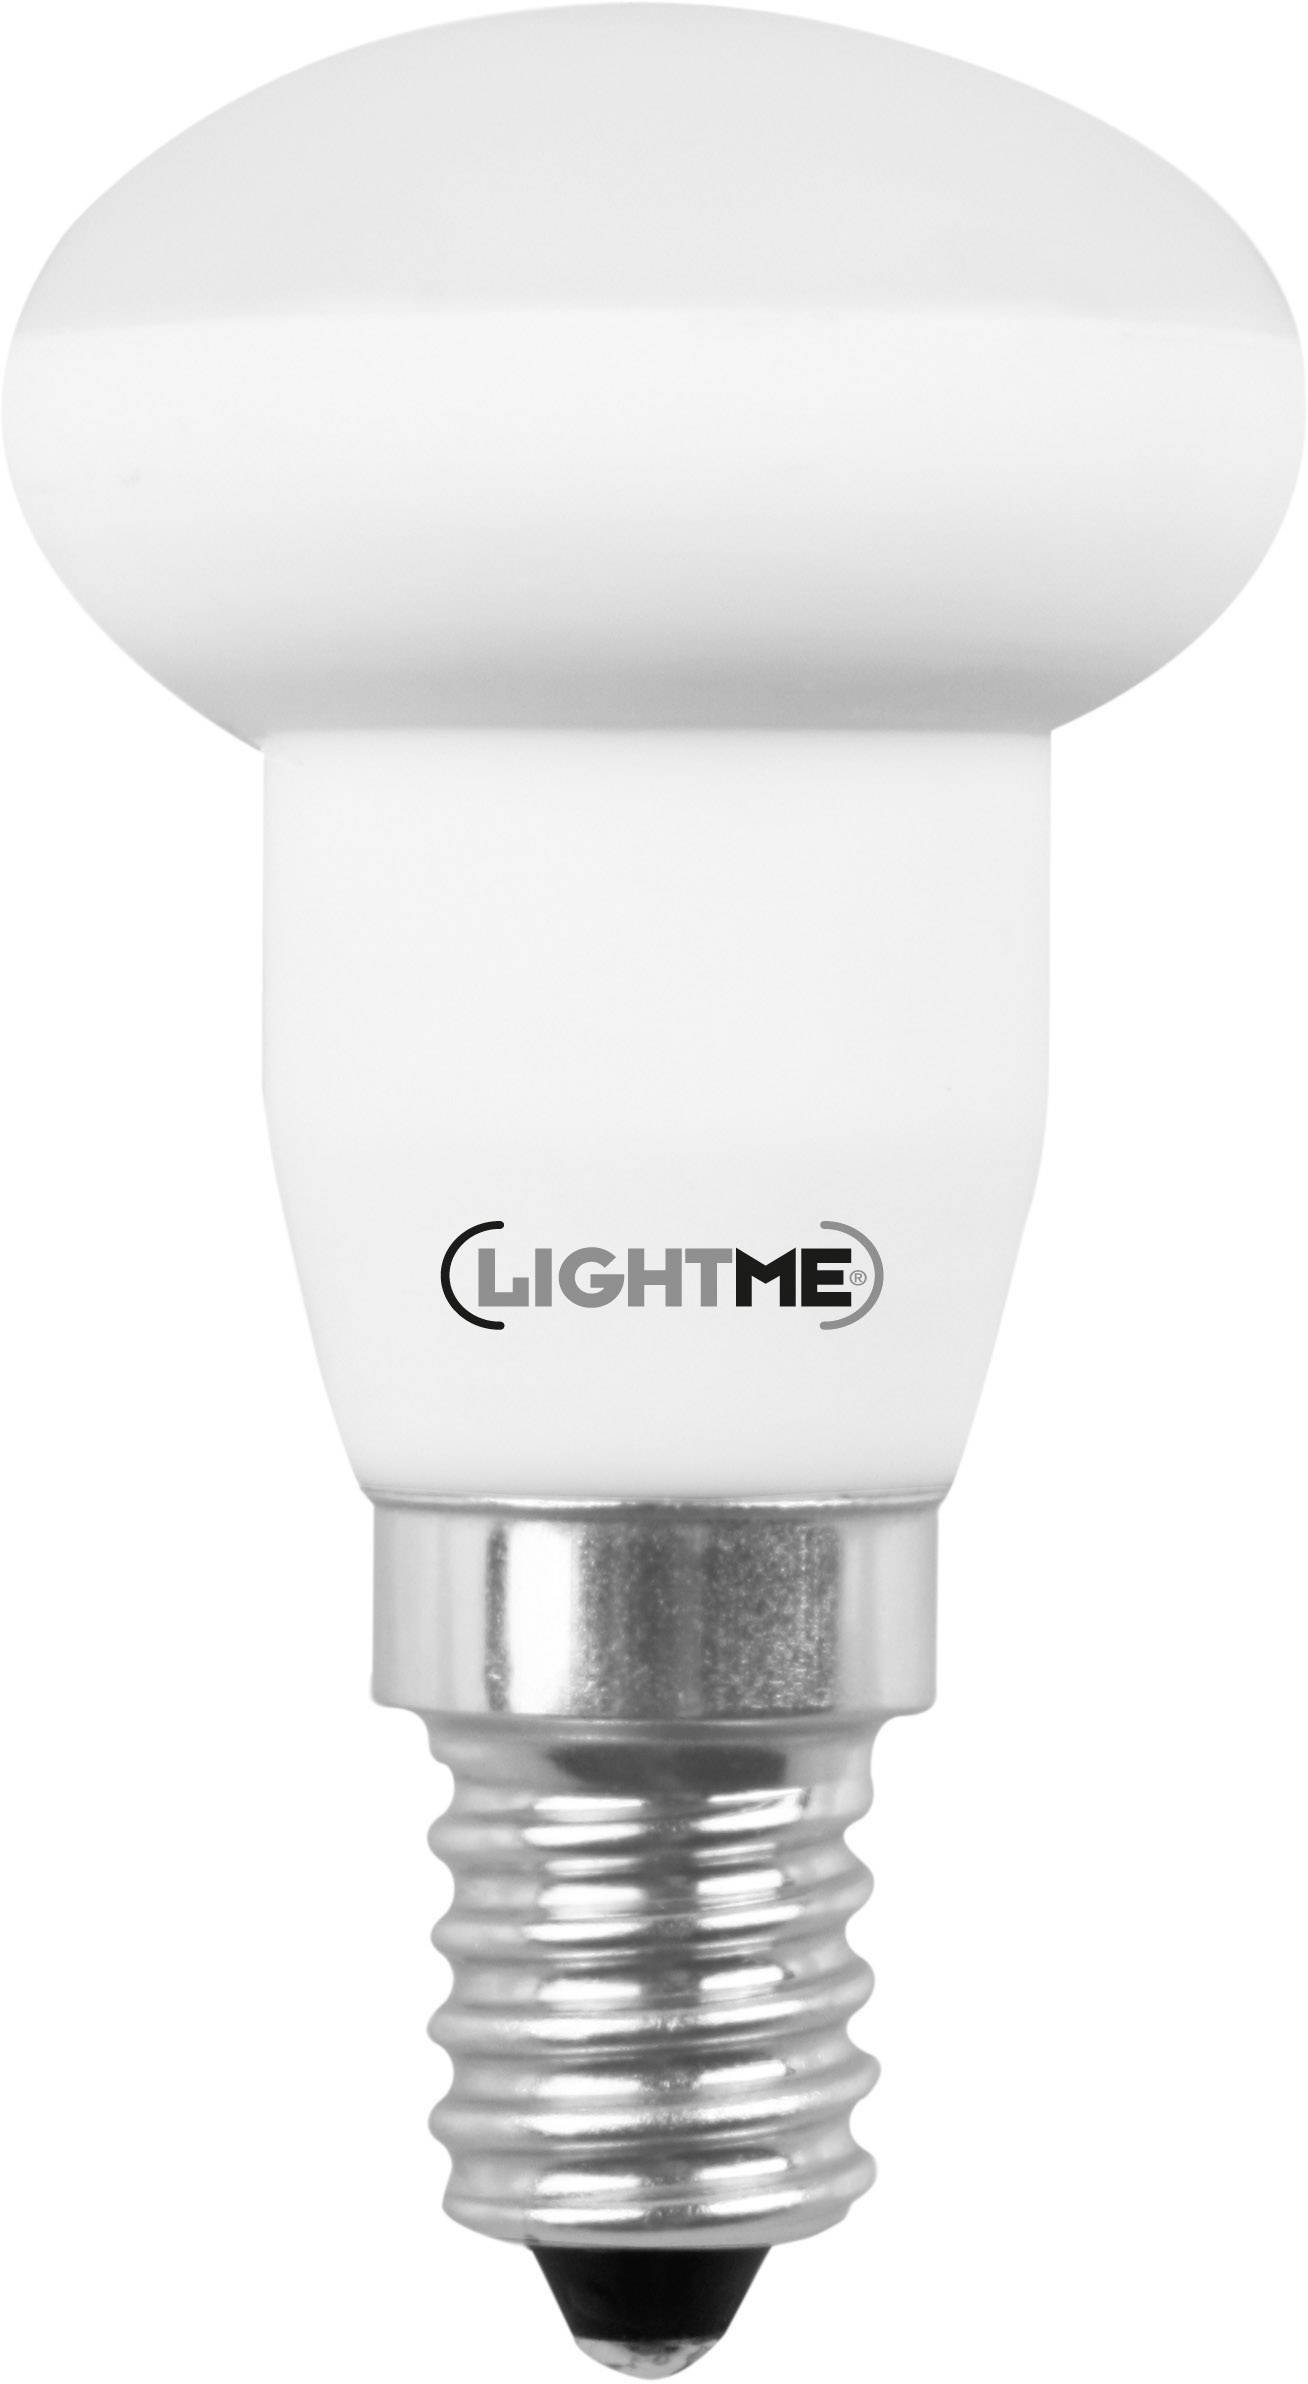 LIGHTME LED (einfarbig) LightMe 230 V E14 3.5 W = 25 W Warmweiß EEK: A+ Reflektor (Ø x L) 39 mm x 70